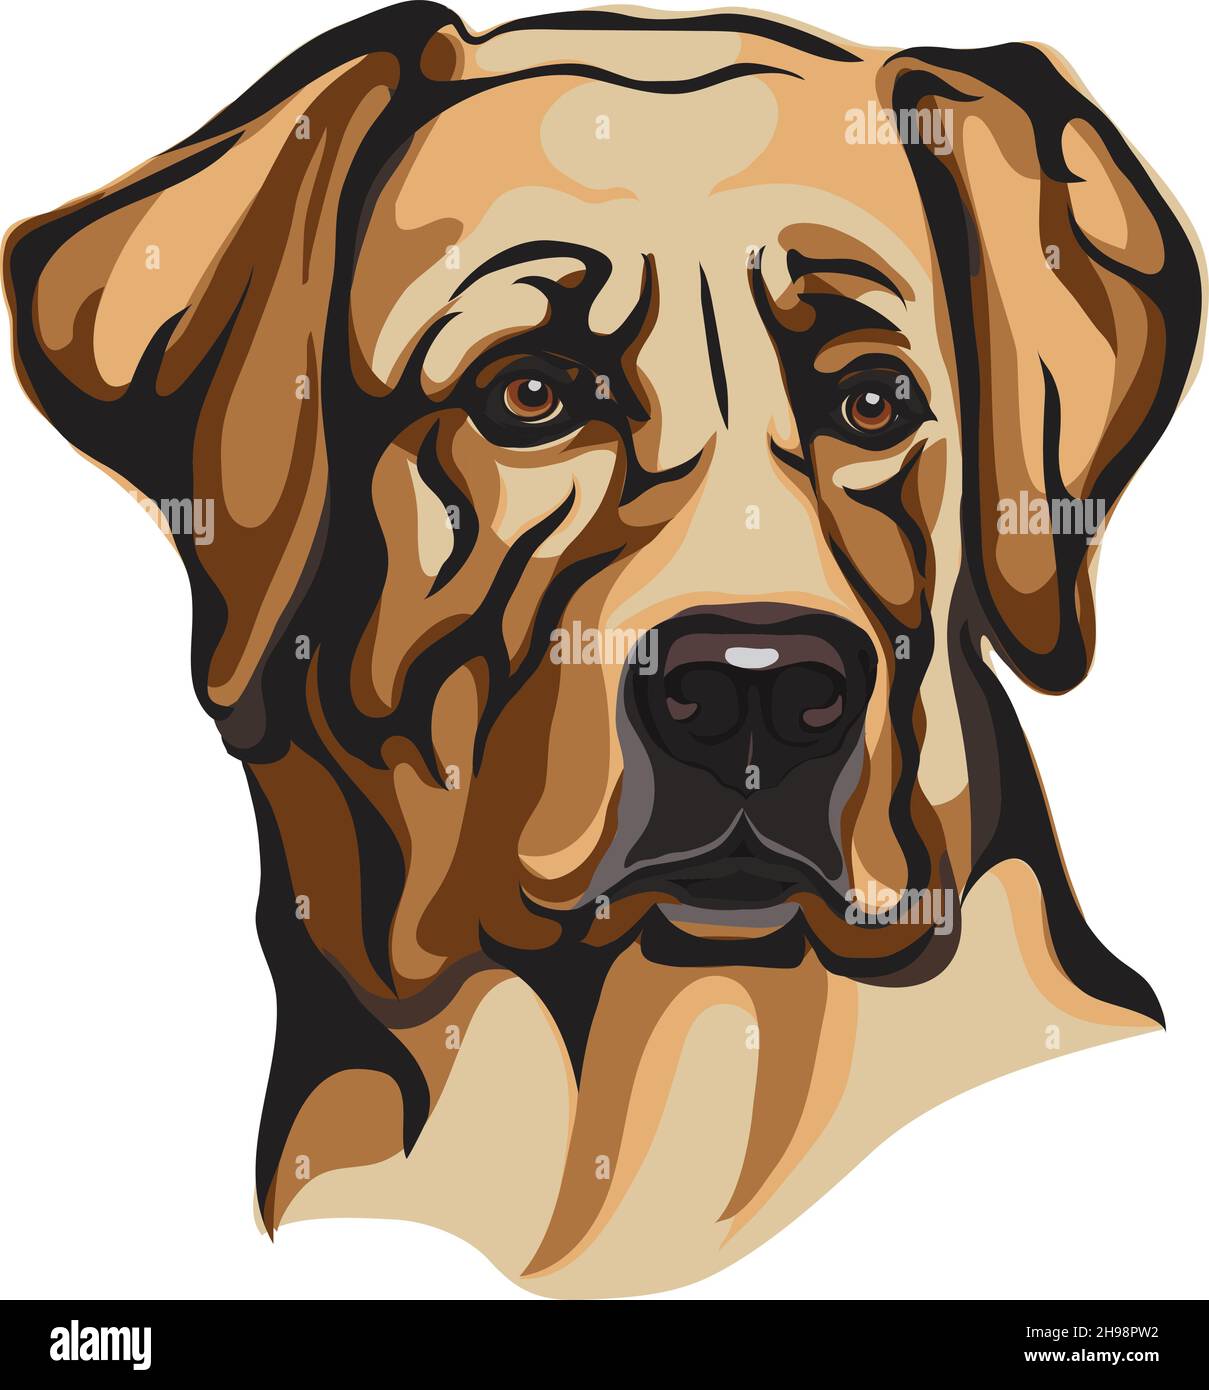 Chien, Labrador jaune, museau d'un chien, race de chiens, image vectorielle d'un portrait d'un chien, chien, portrait, silhouette d'un chien, illustration vectorielle Illustration de Vecteur